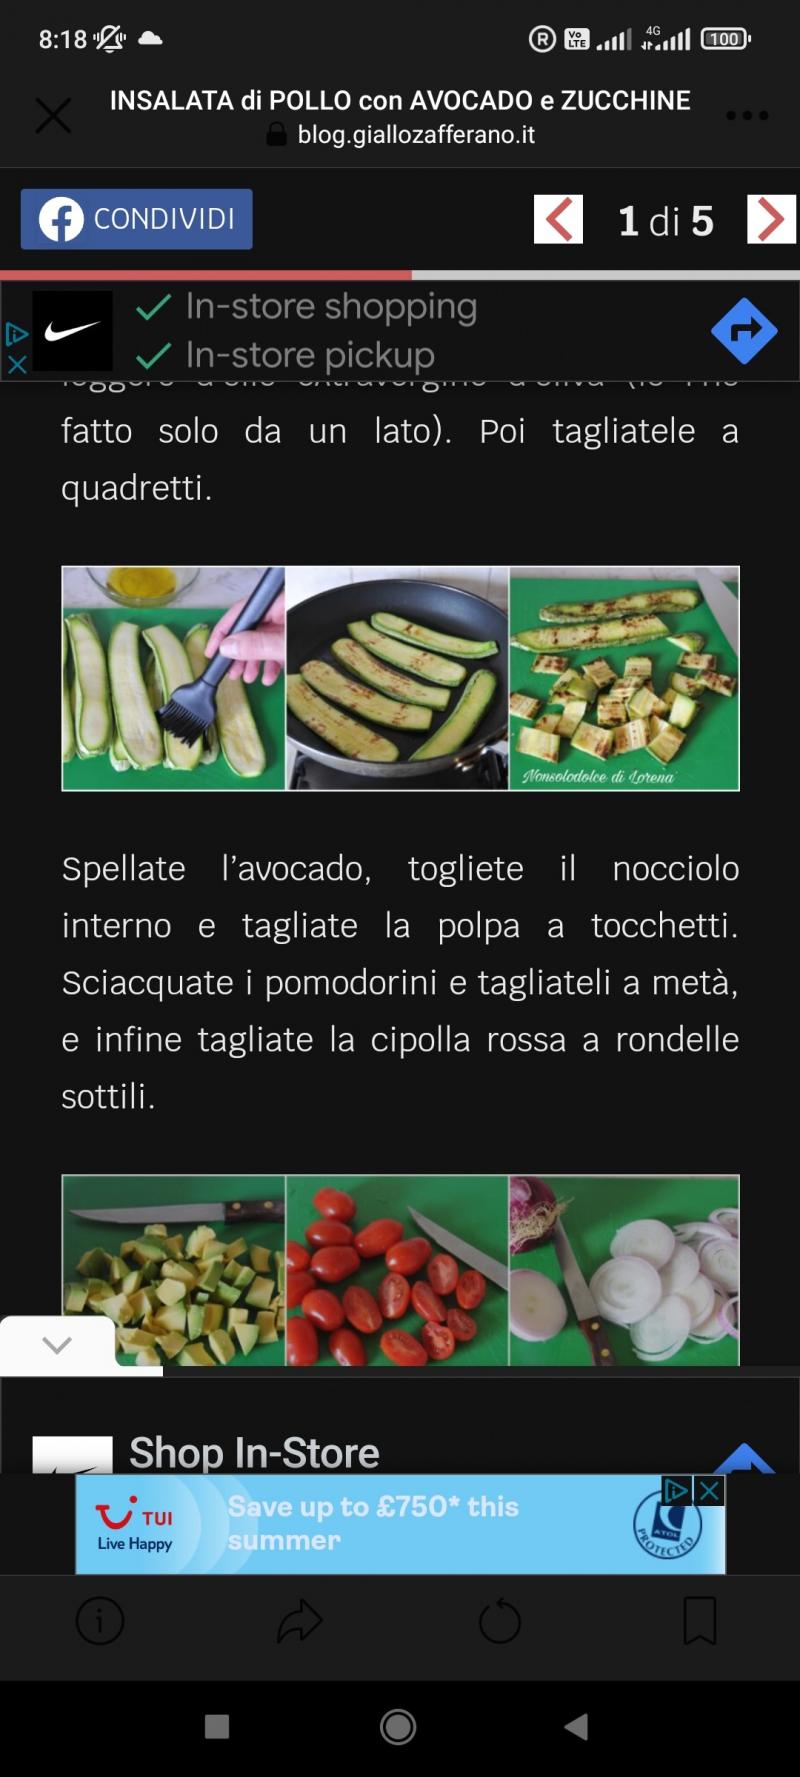 Insalata di pollo avocado e zucchine